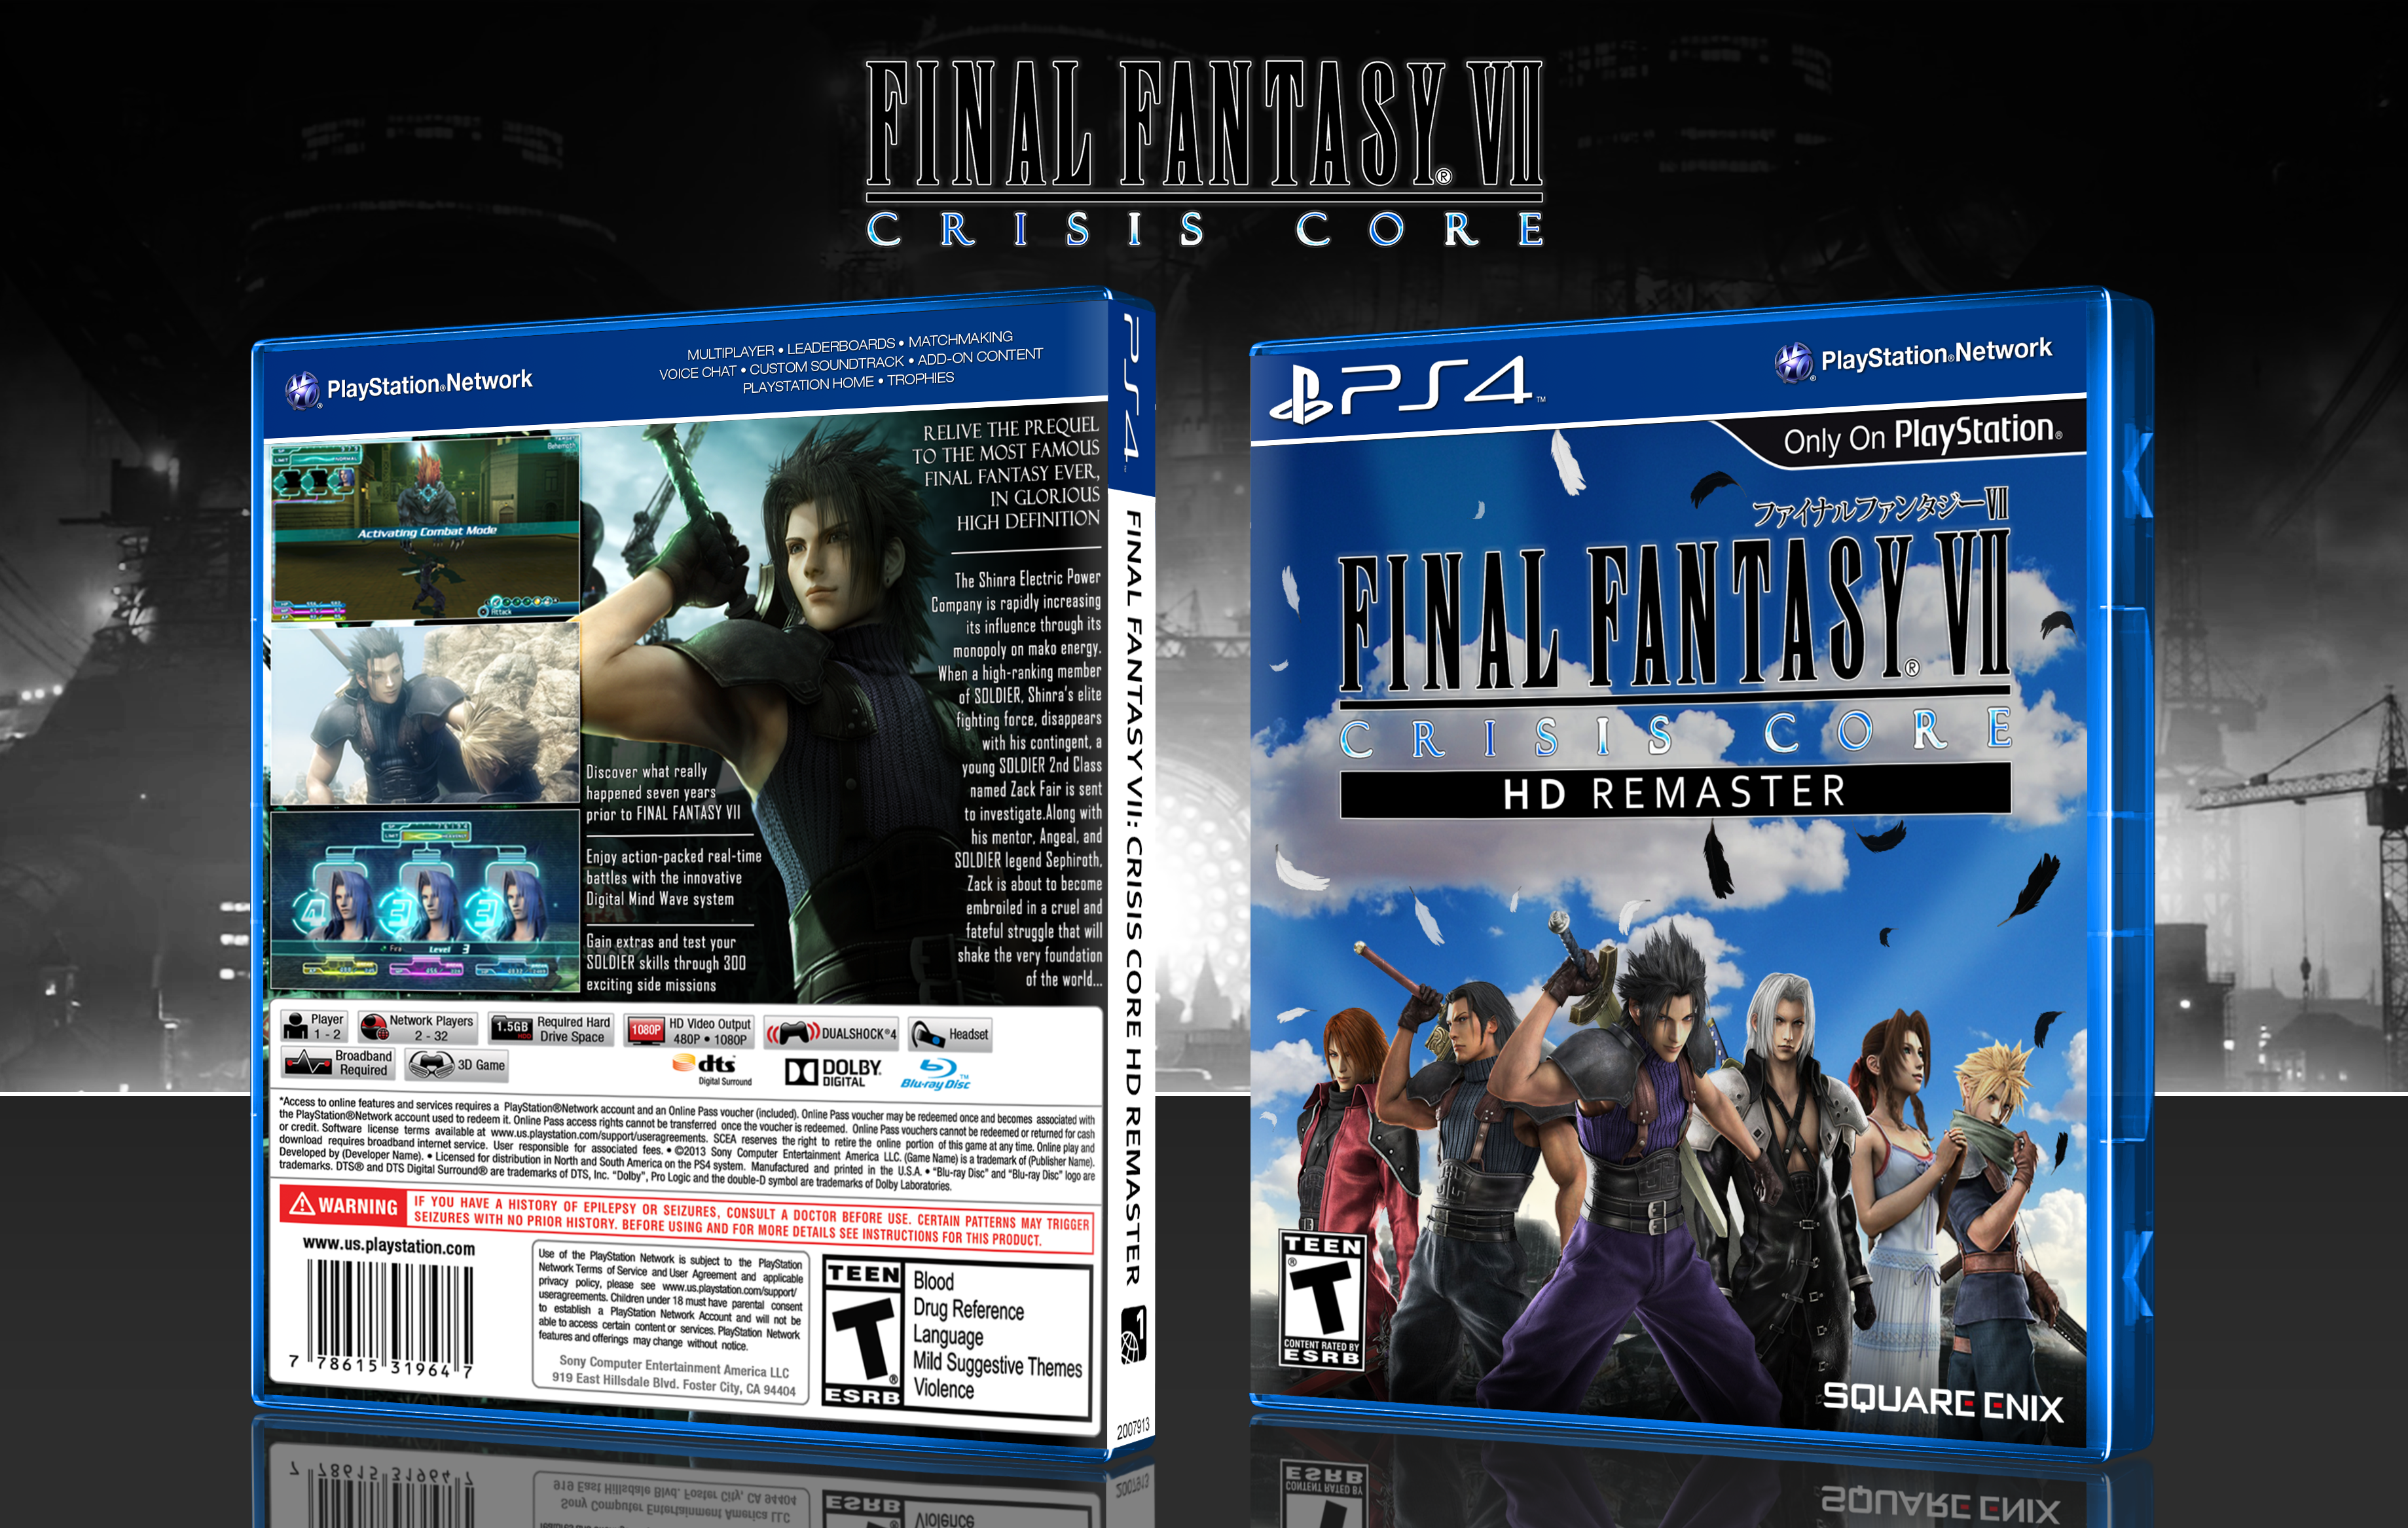 Final Fantasy VII: Crisis Core HD Remaster box cover